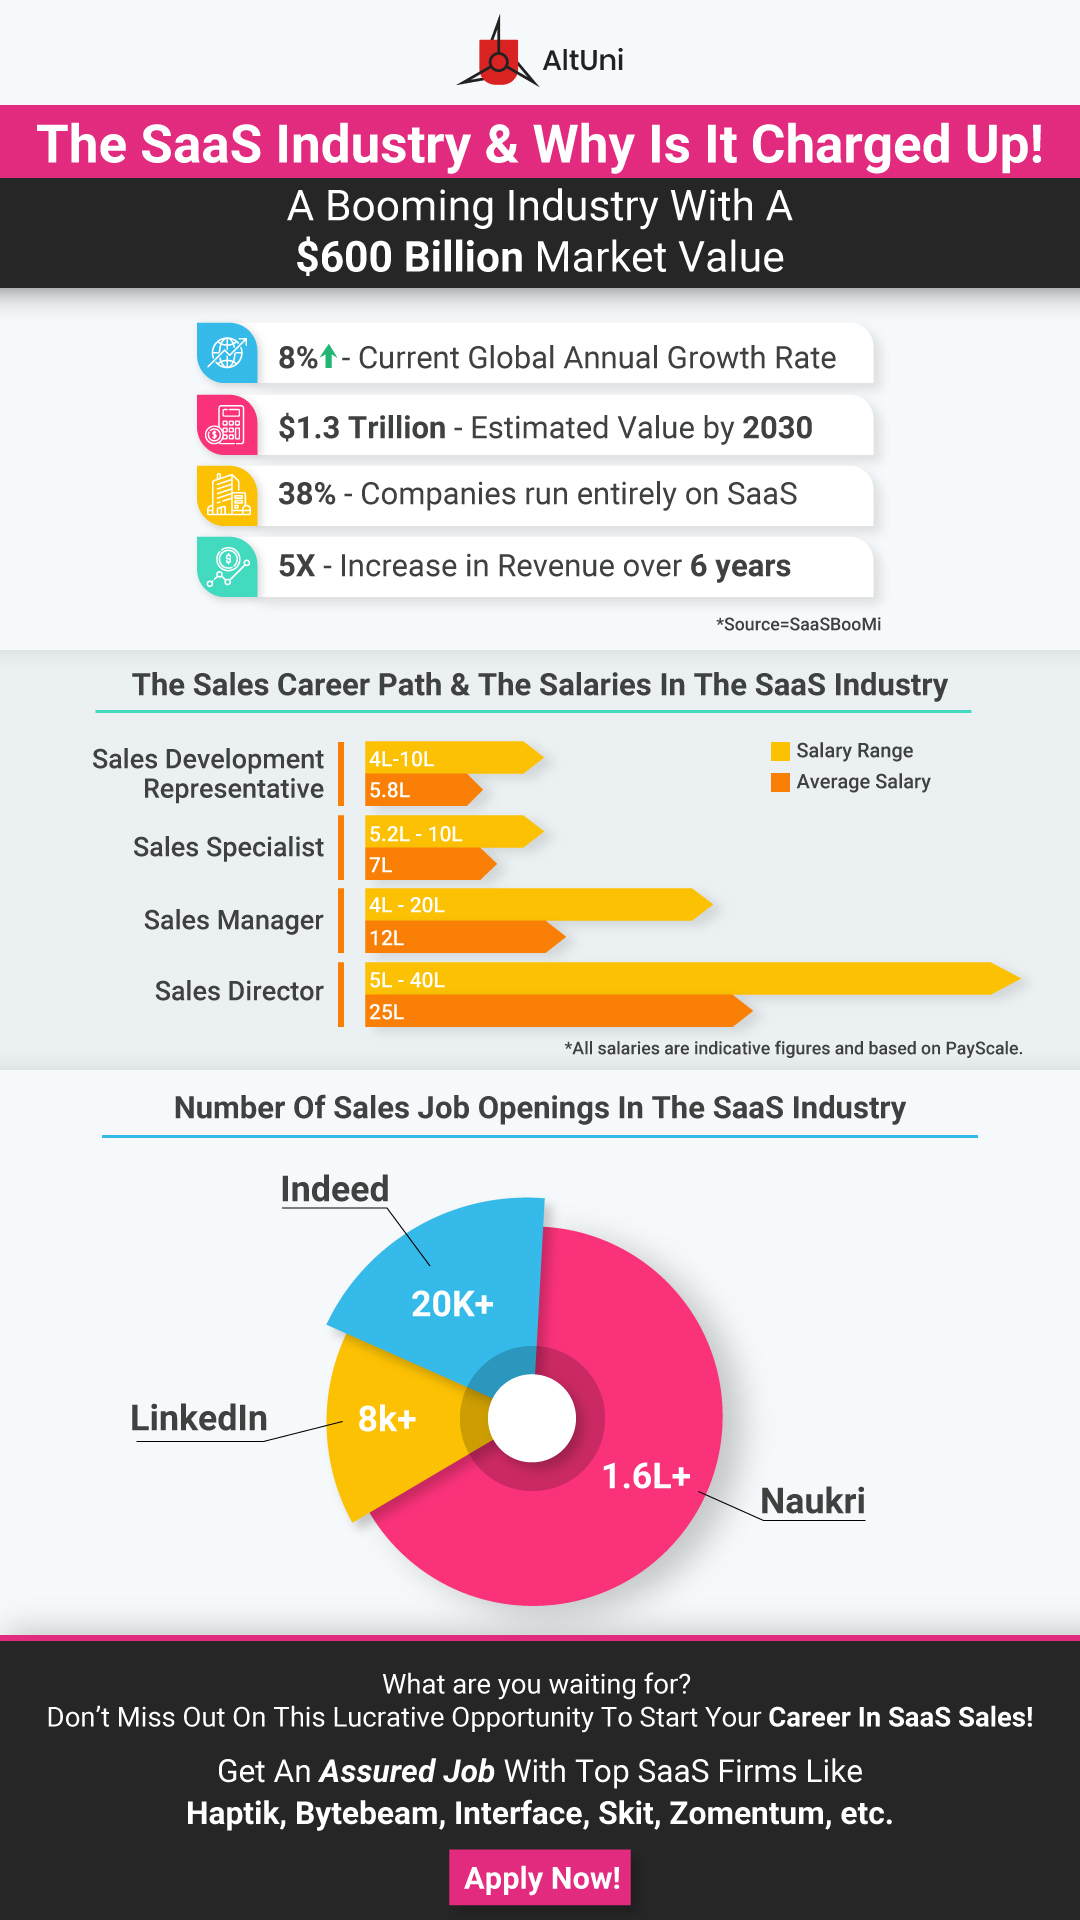 saas-sales-careers-salaries